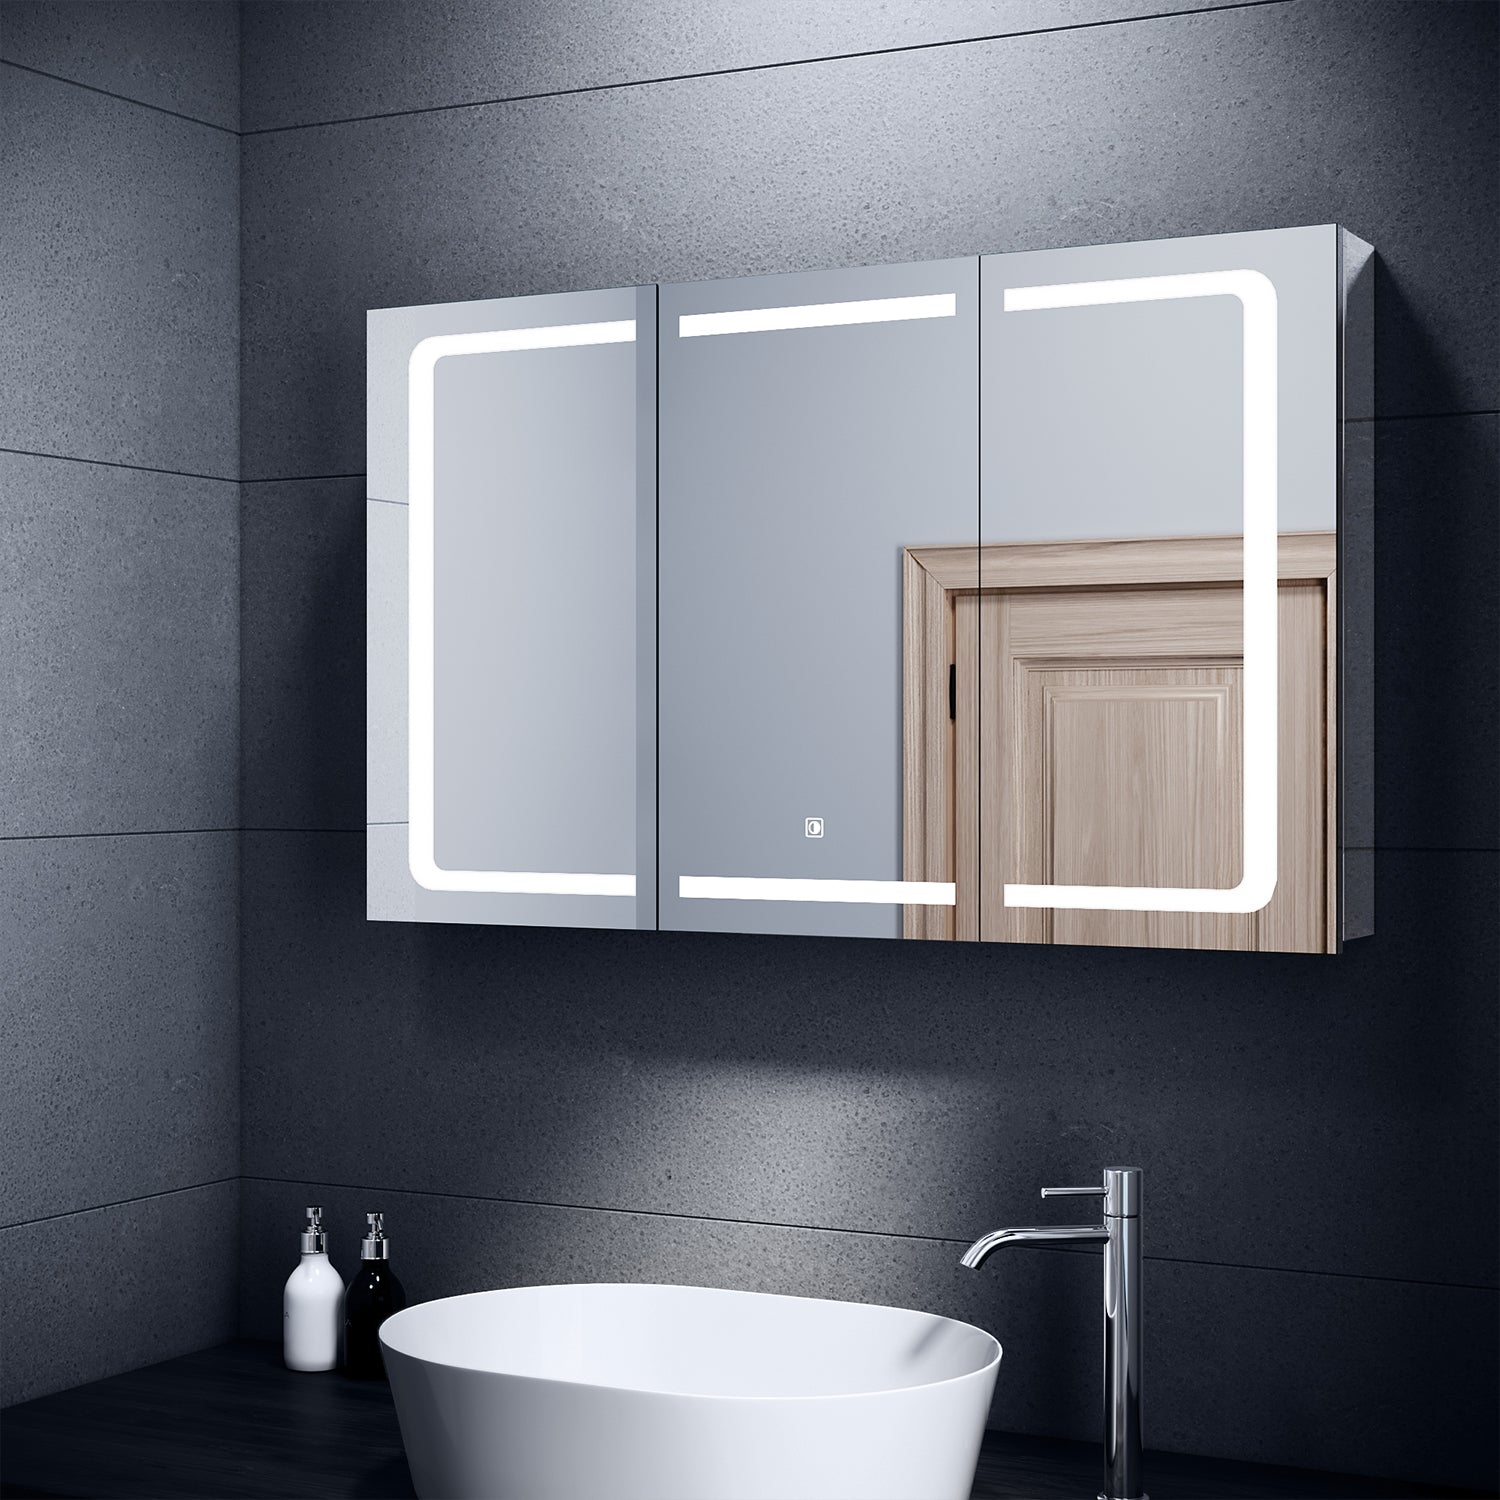 SONNI Spiegelschrank mit Beleuchtung LED Spiegelschrank Badezimmer mit Touchschalter und Steckdose Edelstah 1050x650mm